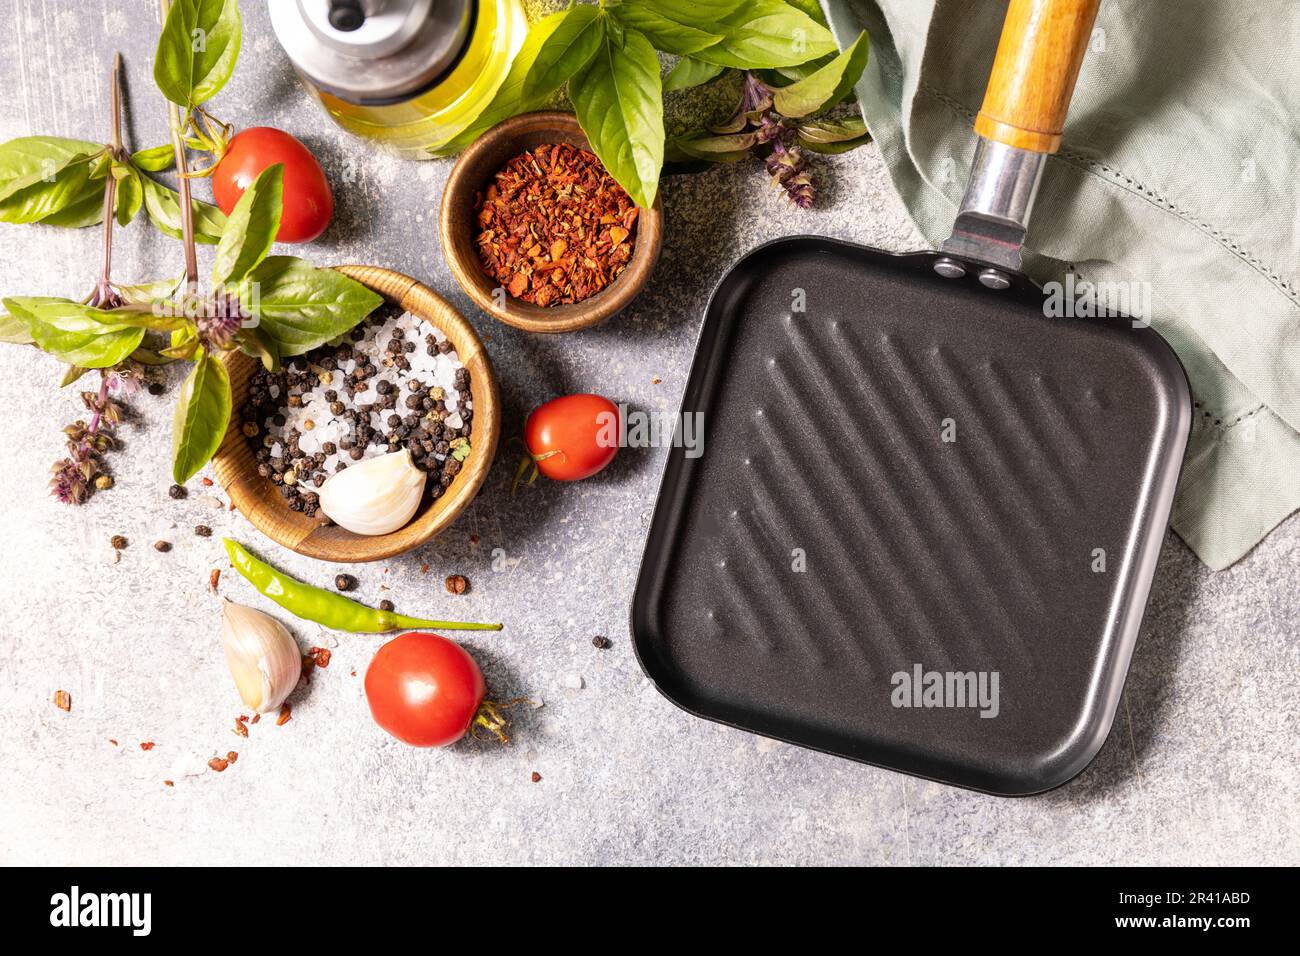 Kochhintergrund auf grauem Hintergrund mit Grillpfanne. Leere Grillpfanne, Gemüse, Gewürze und Kräuter auf einem Steintisch. Vi Stockfoto